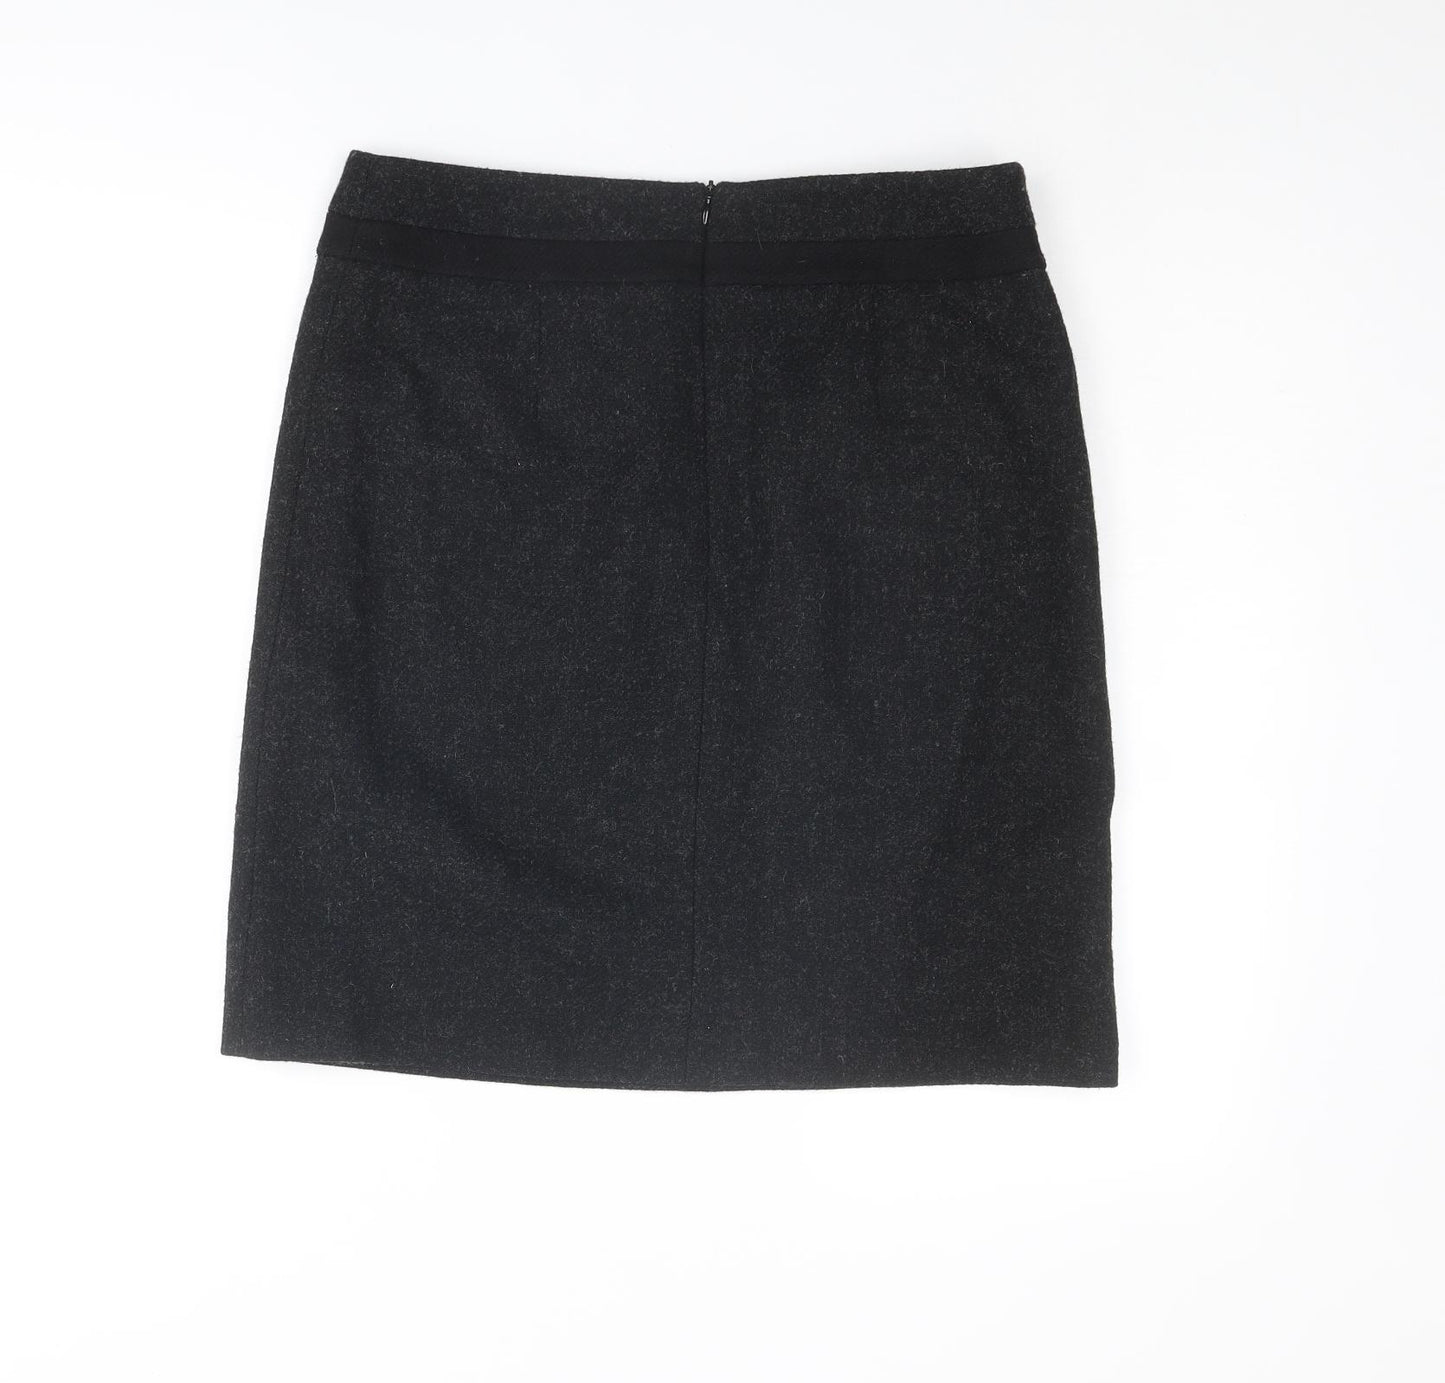 Boden Womens Black Wool A-Line Skirt Size 12 Zip